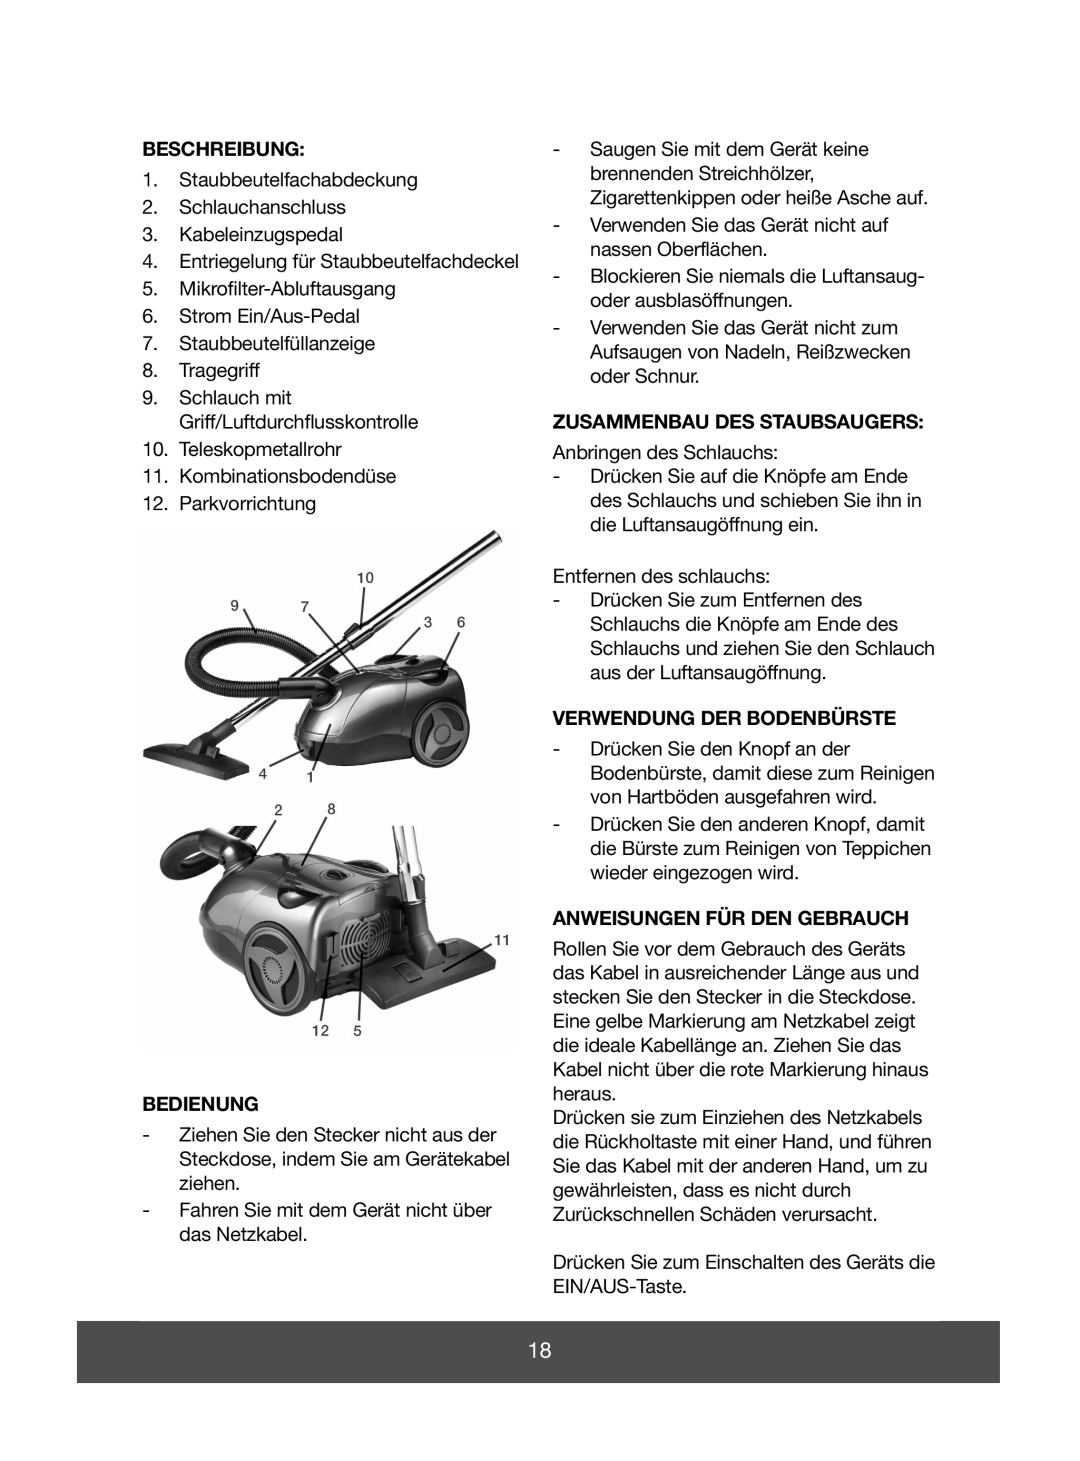 Melissa 640-045 manual Beschreibung, Bedienung, Zusammenbau Des Staubsaugers, Verwendung Der Bodenbürste 